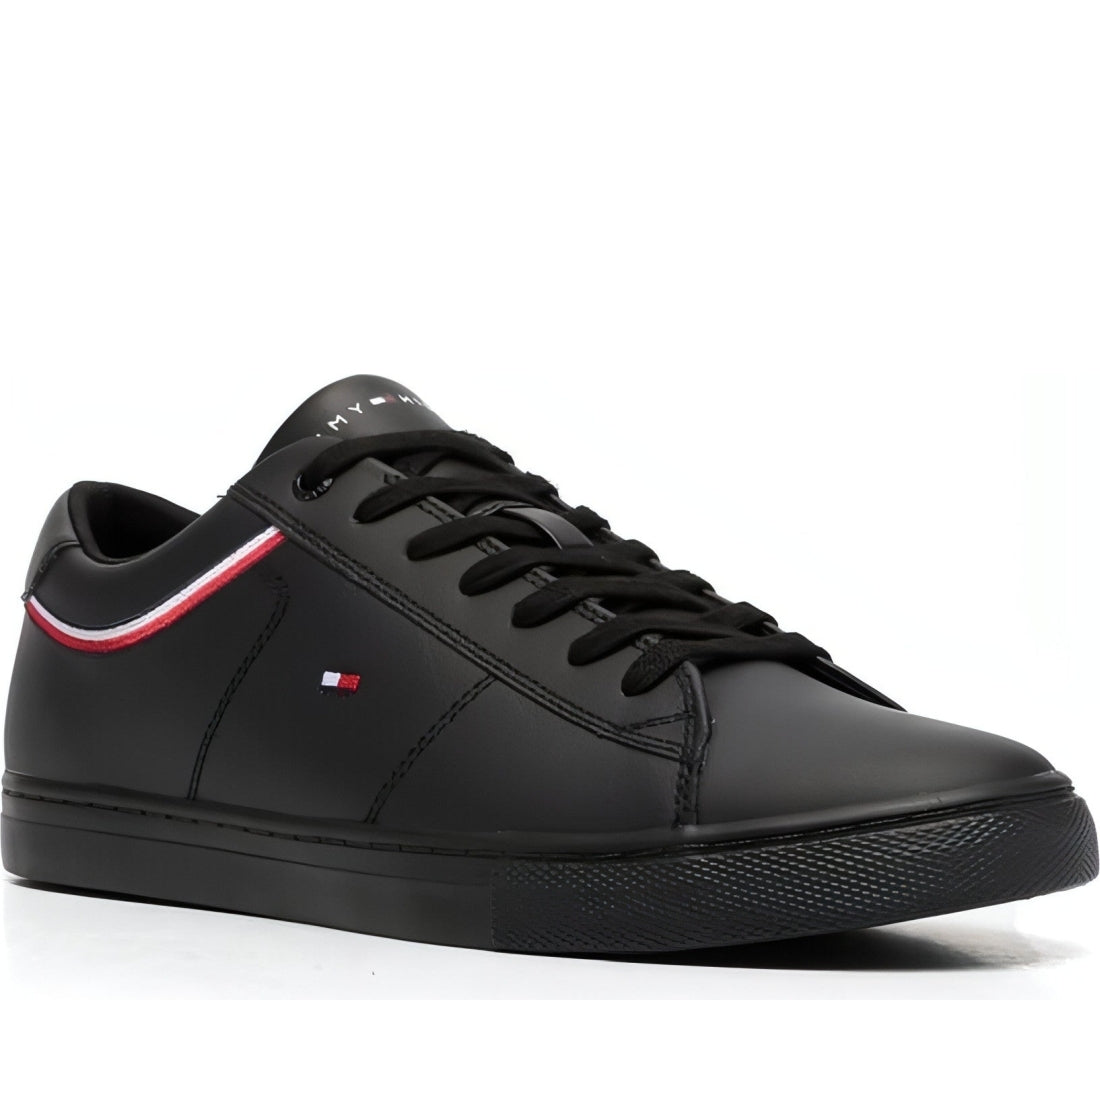 Tommy Hilfiger mens black essential sneaker detail | Vilbury London